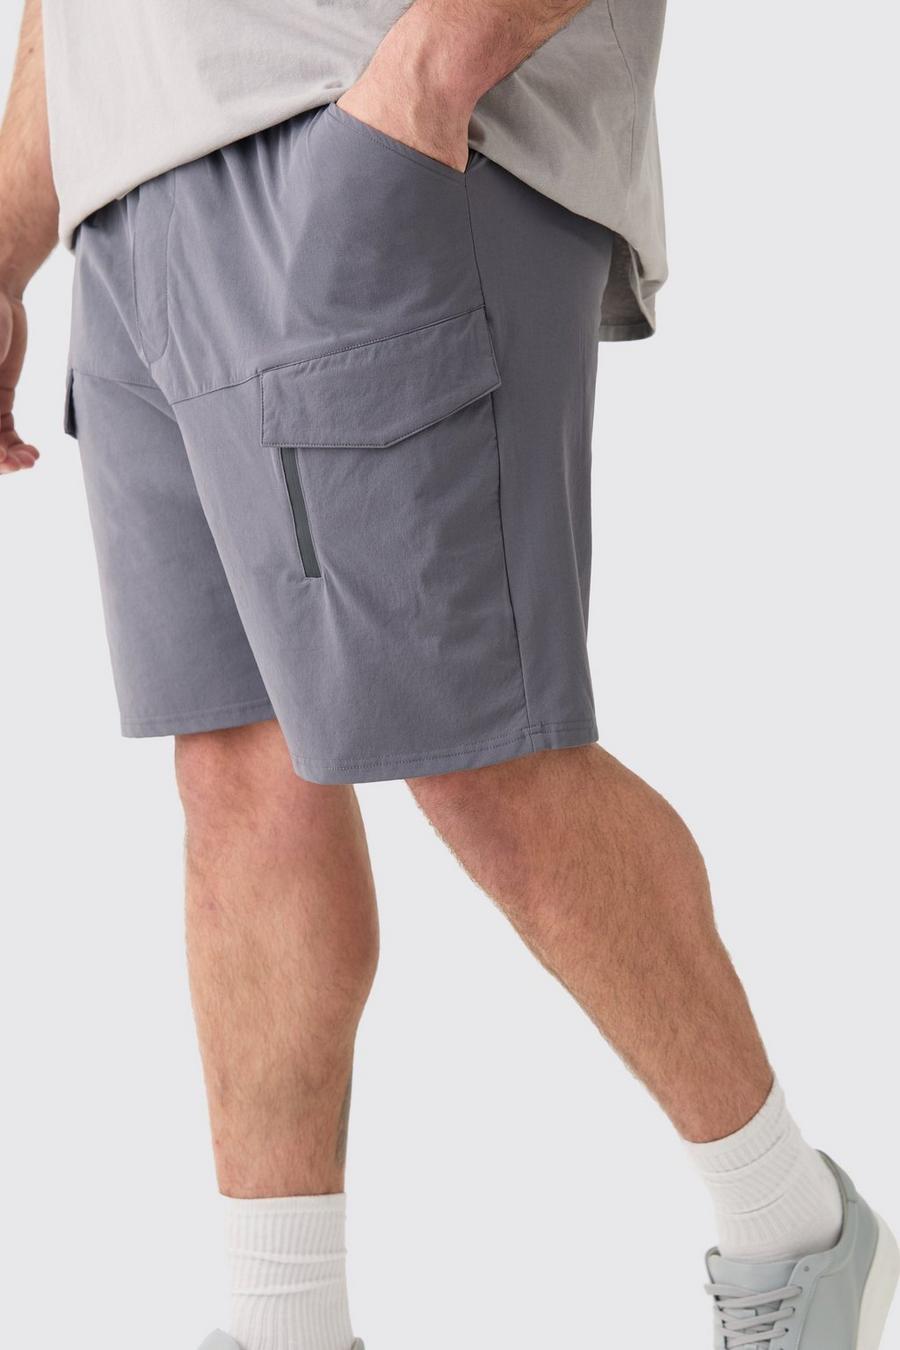 Pantalón corto Plus cargo elástico ligero holgado con cremallera, Charcoal image number 1